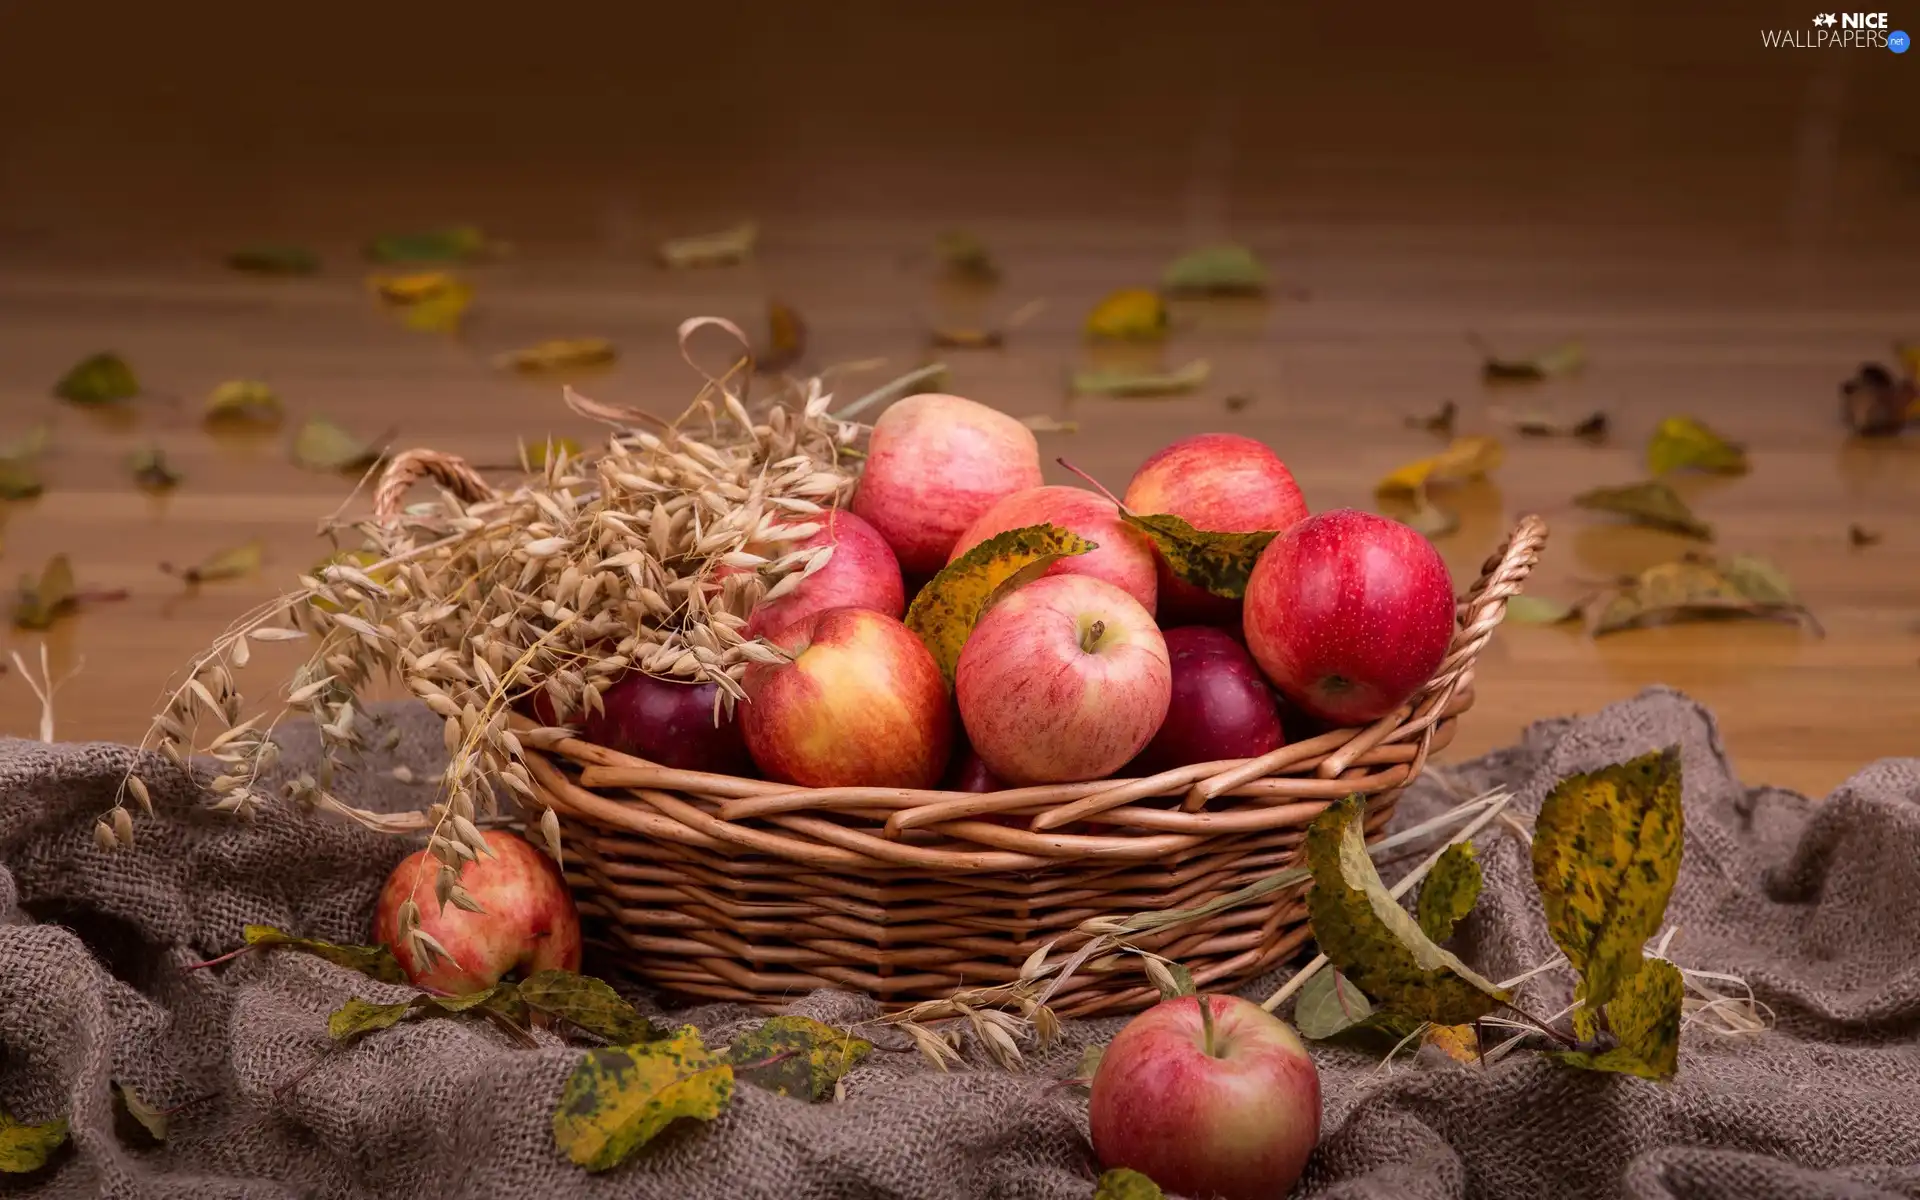 apples, Leaf, composition, basket